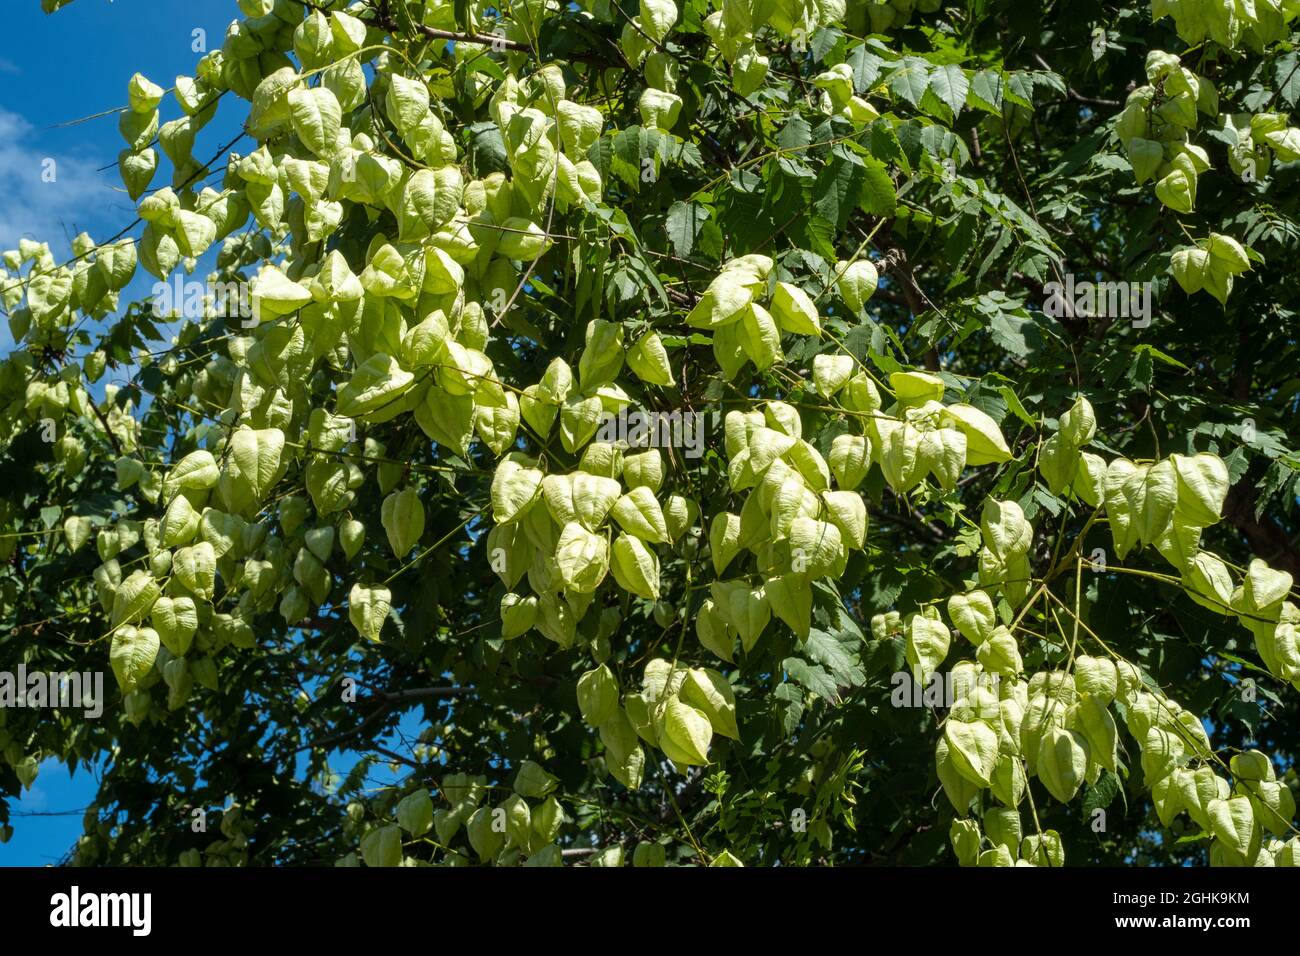 Goldener Regenbaum oder Stolz Indiens, Koelreuteria paniculata in Blüte und Frucht. Stockfoto